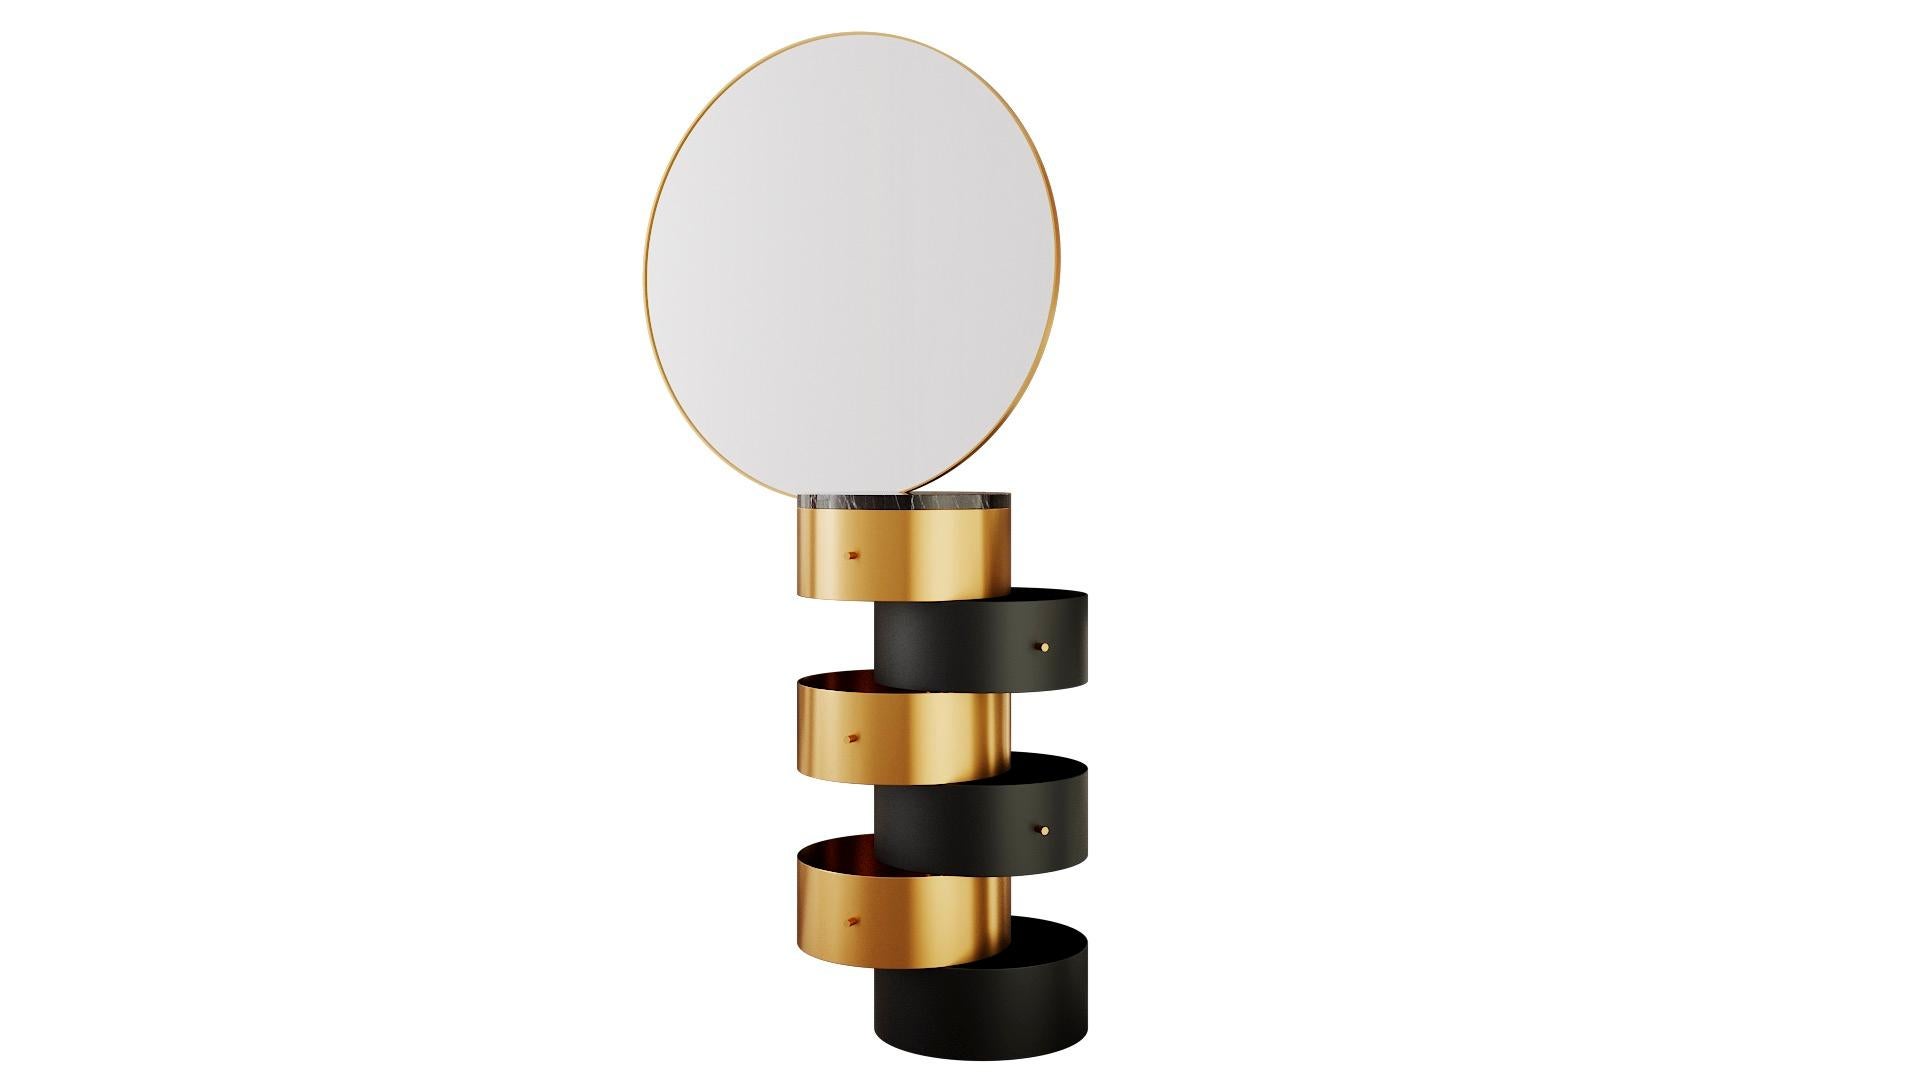 Strings gold and black metal vanity table with mirror by NIKA ZUPANC, est une coiffeuse à la forme surprenante - ses tiroirs circulaires en métal avec un grand miroir sont étonnants avec le Strings Pouf. 

Le mot 